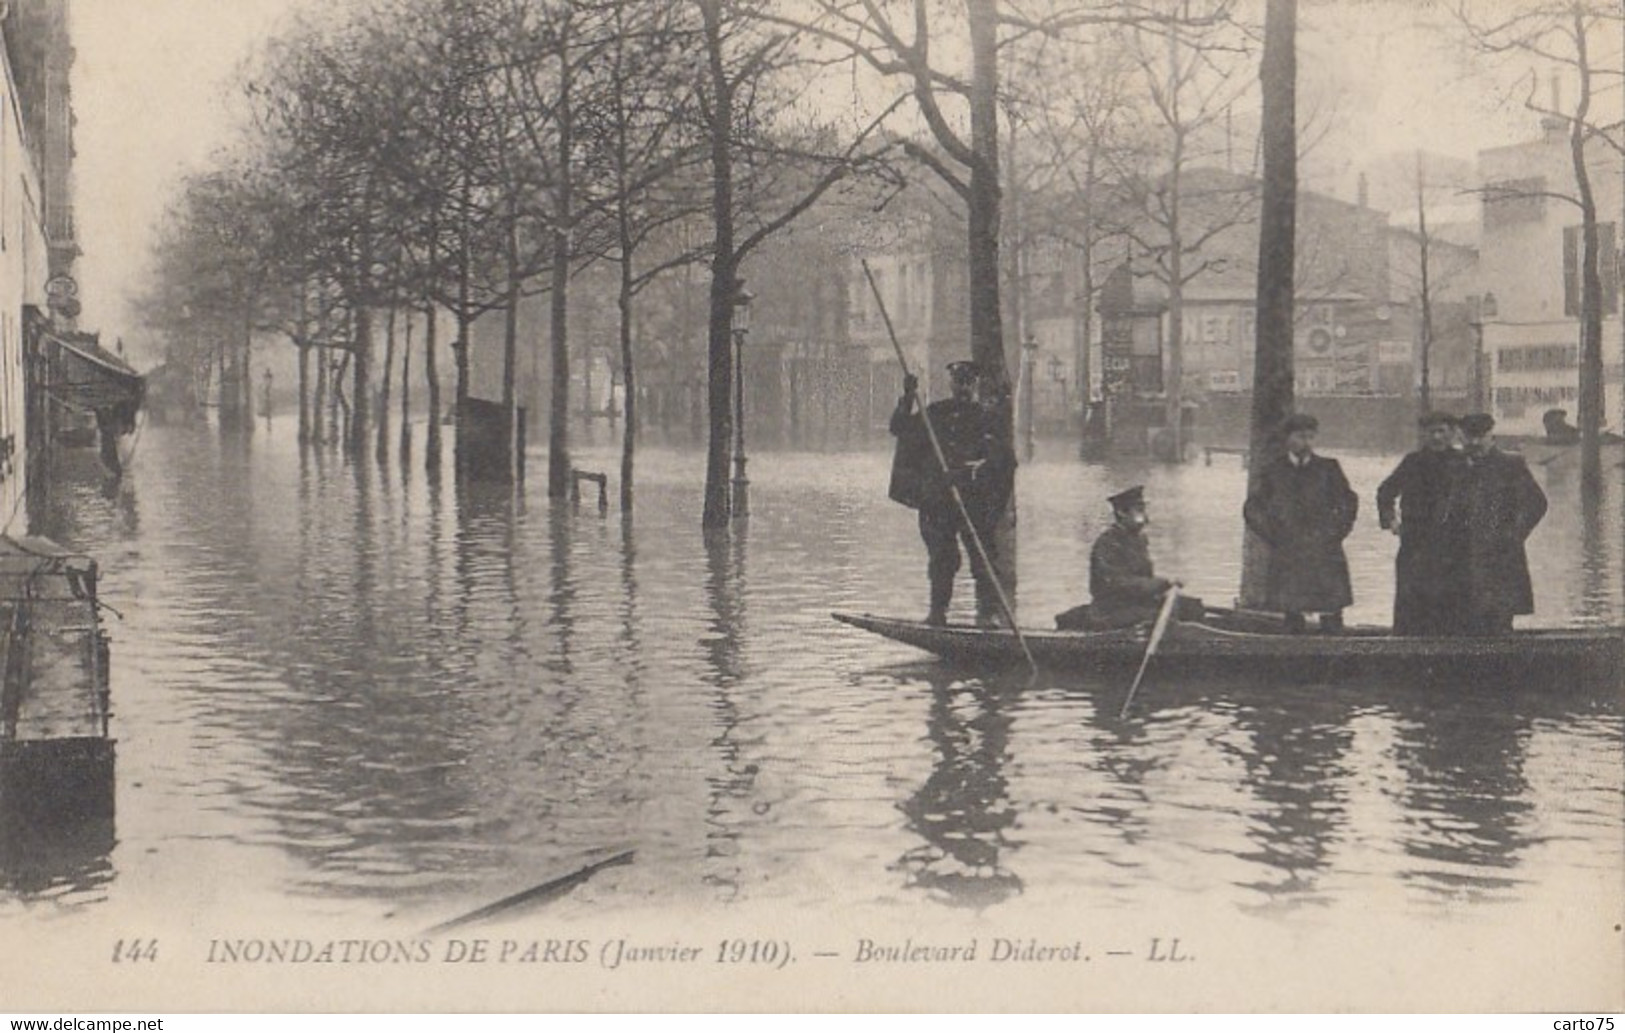 Evènements - Inondations - Paris Janvier 1910 - Boulevard Diderot - Overstromingen